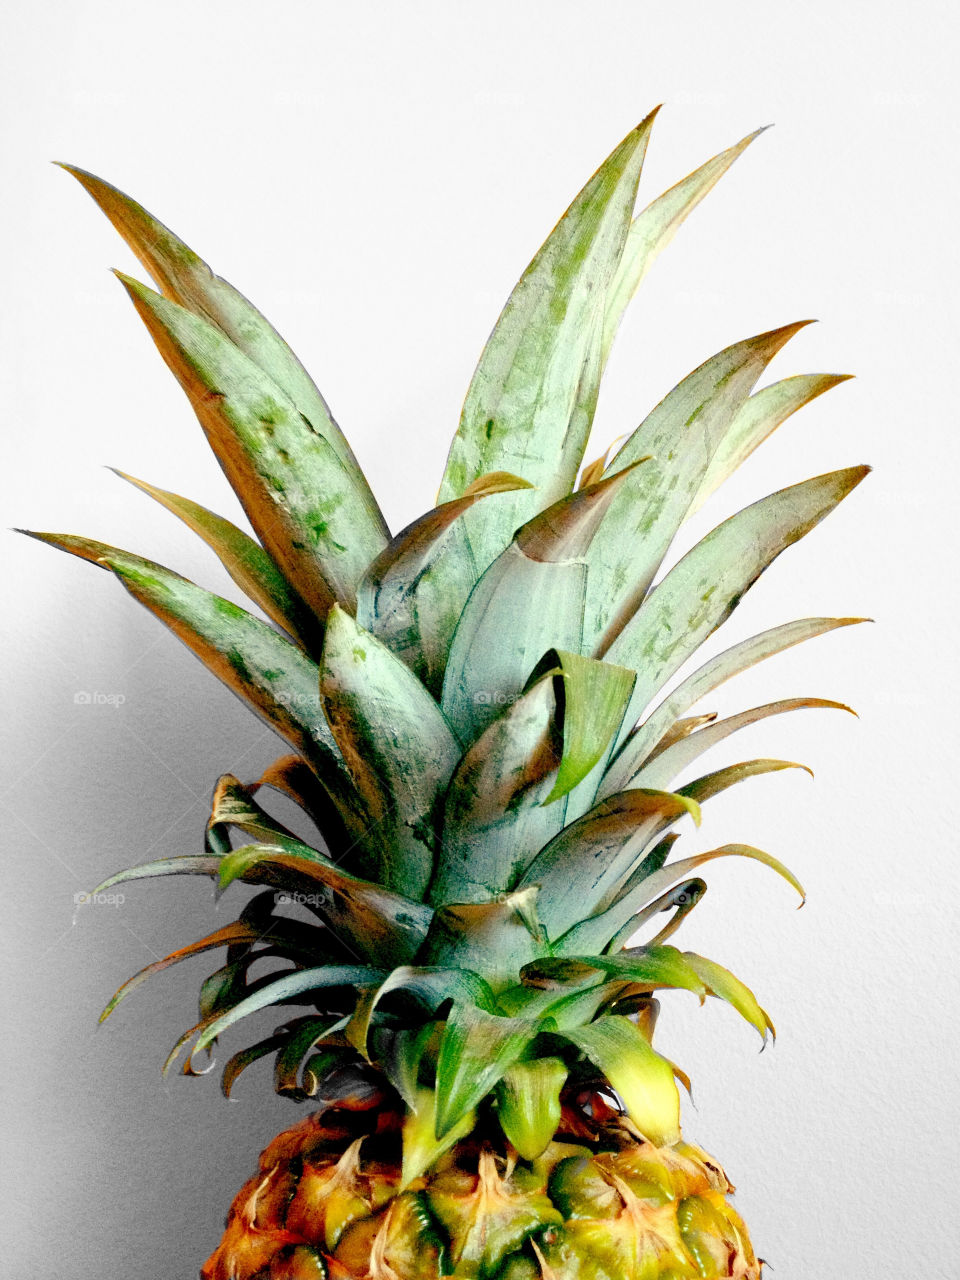 Closeup of a pineapple upper part